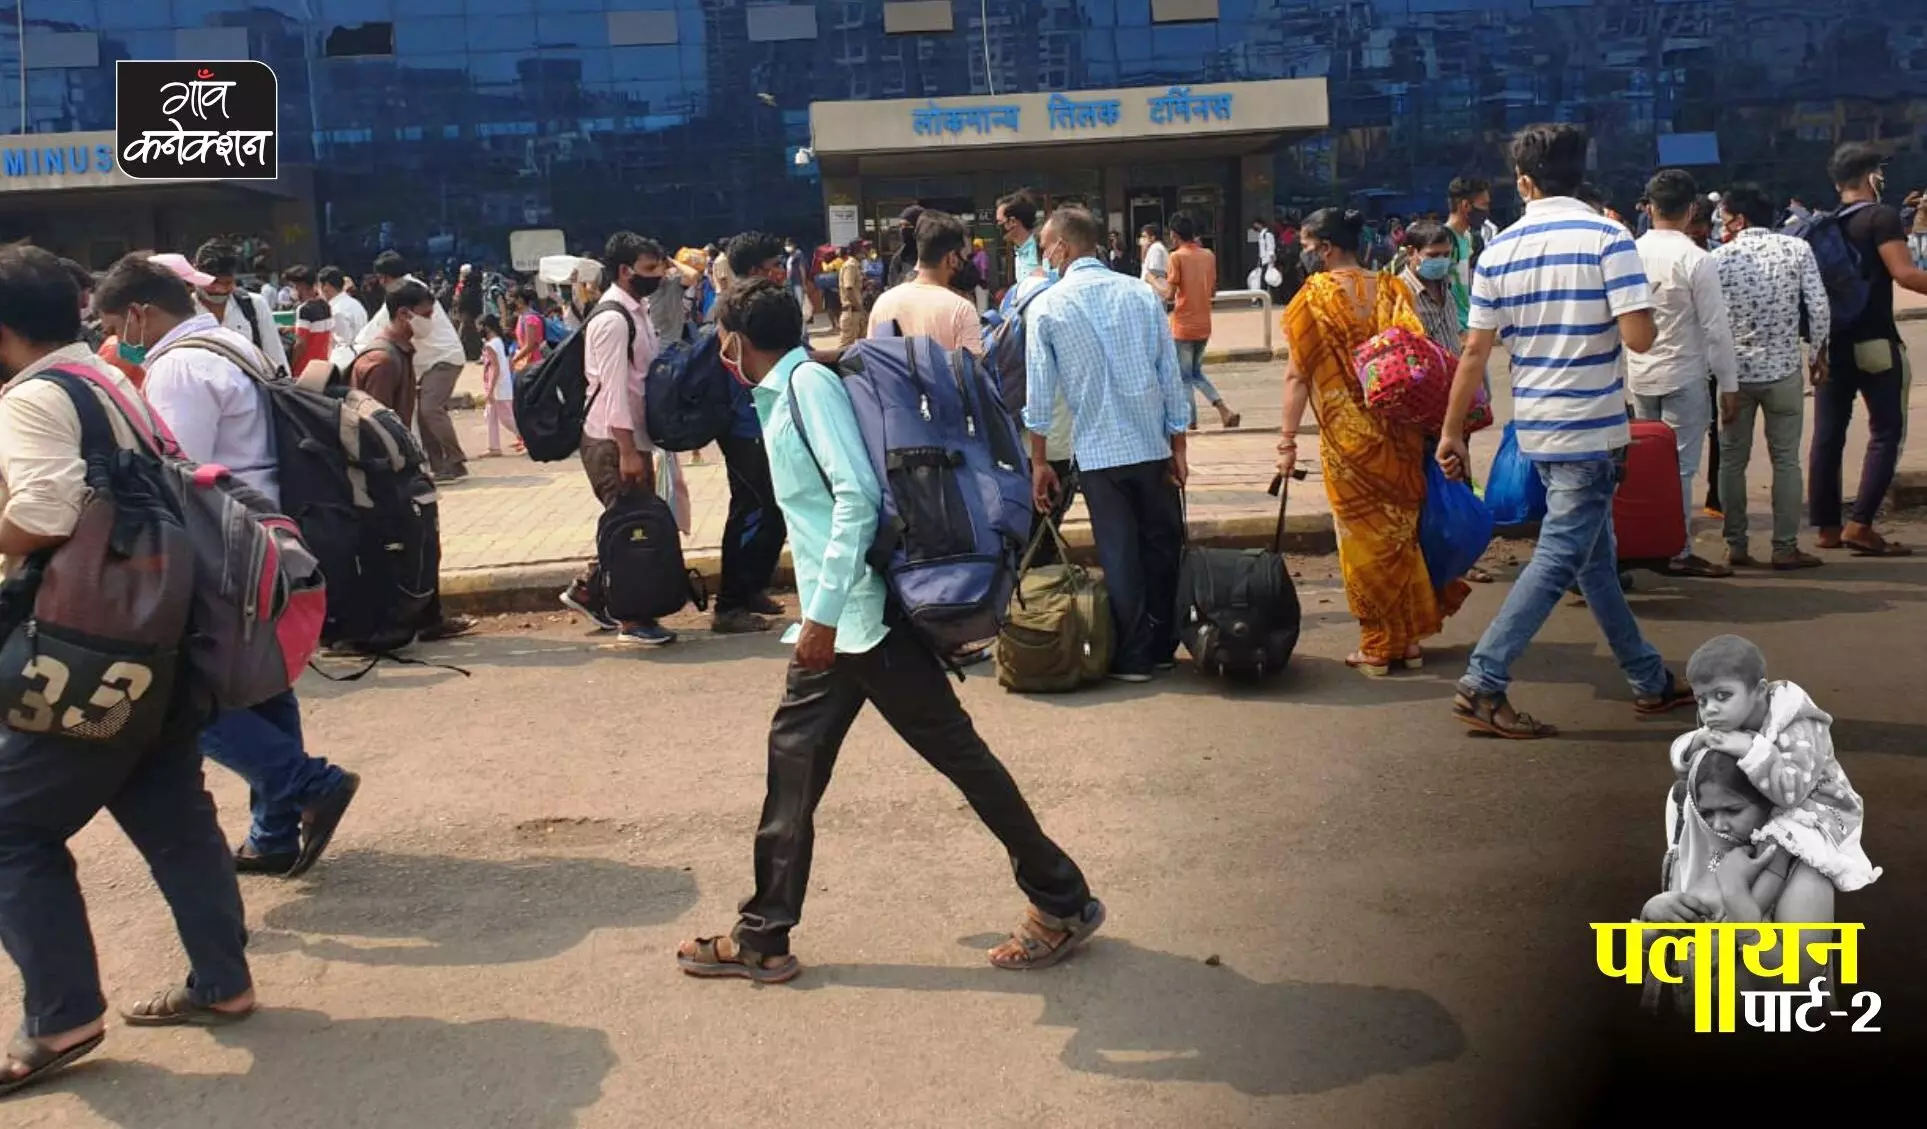 महाराष्ट्र: लॉकडाउन के चलते प्रवासी मजदूरों के सामने खाने का संकट, कई लोगों के पास ट्रेन का टिकट लेने तक के पैसे नहीं